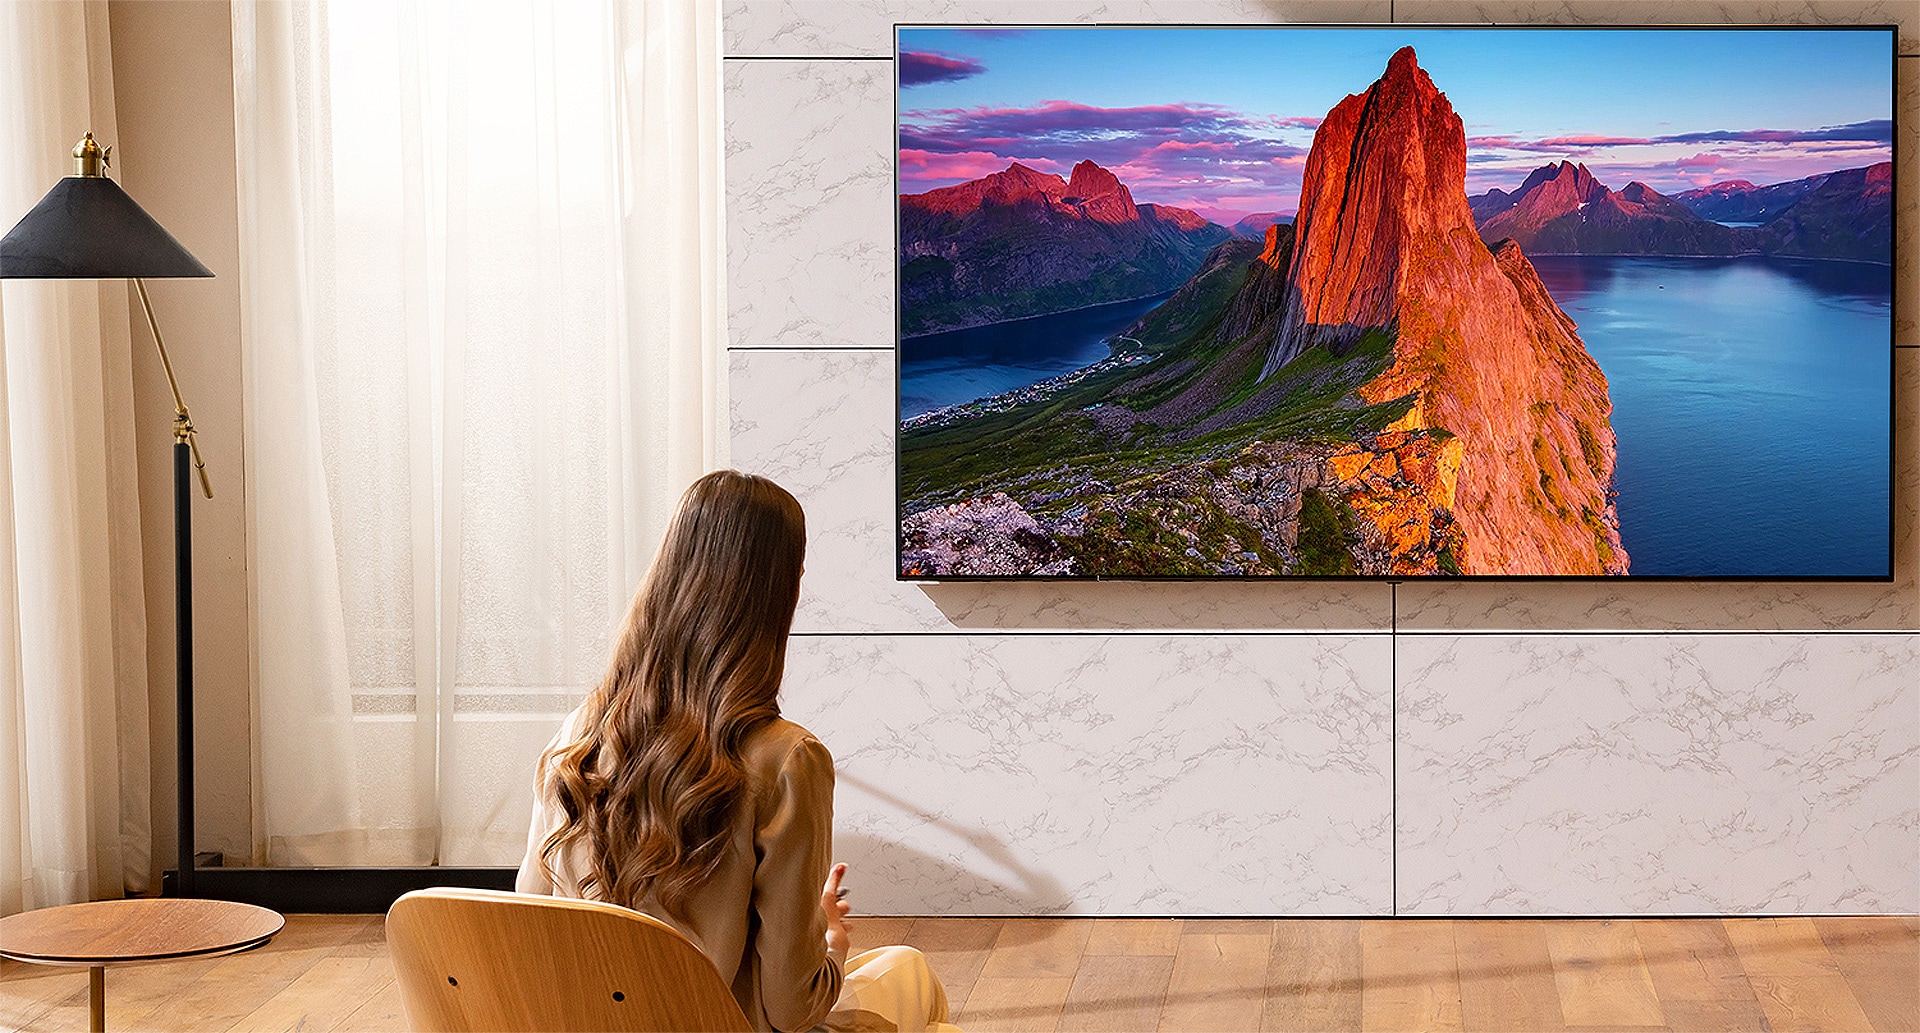 Une femme regarde la télévision dans un salon. L’écran du téléviseur affiche un paysage.